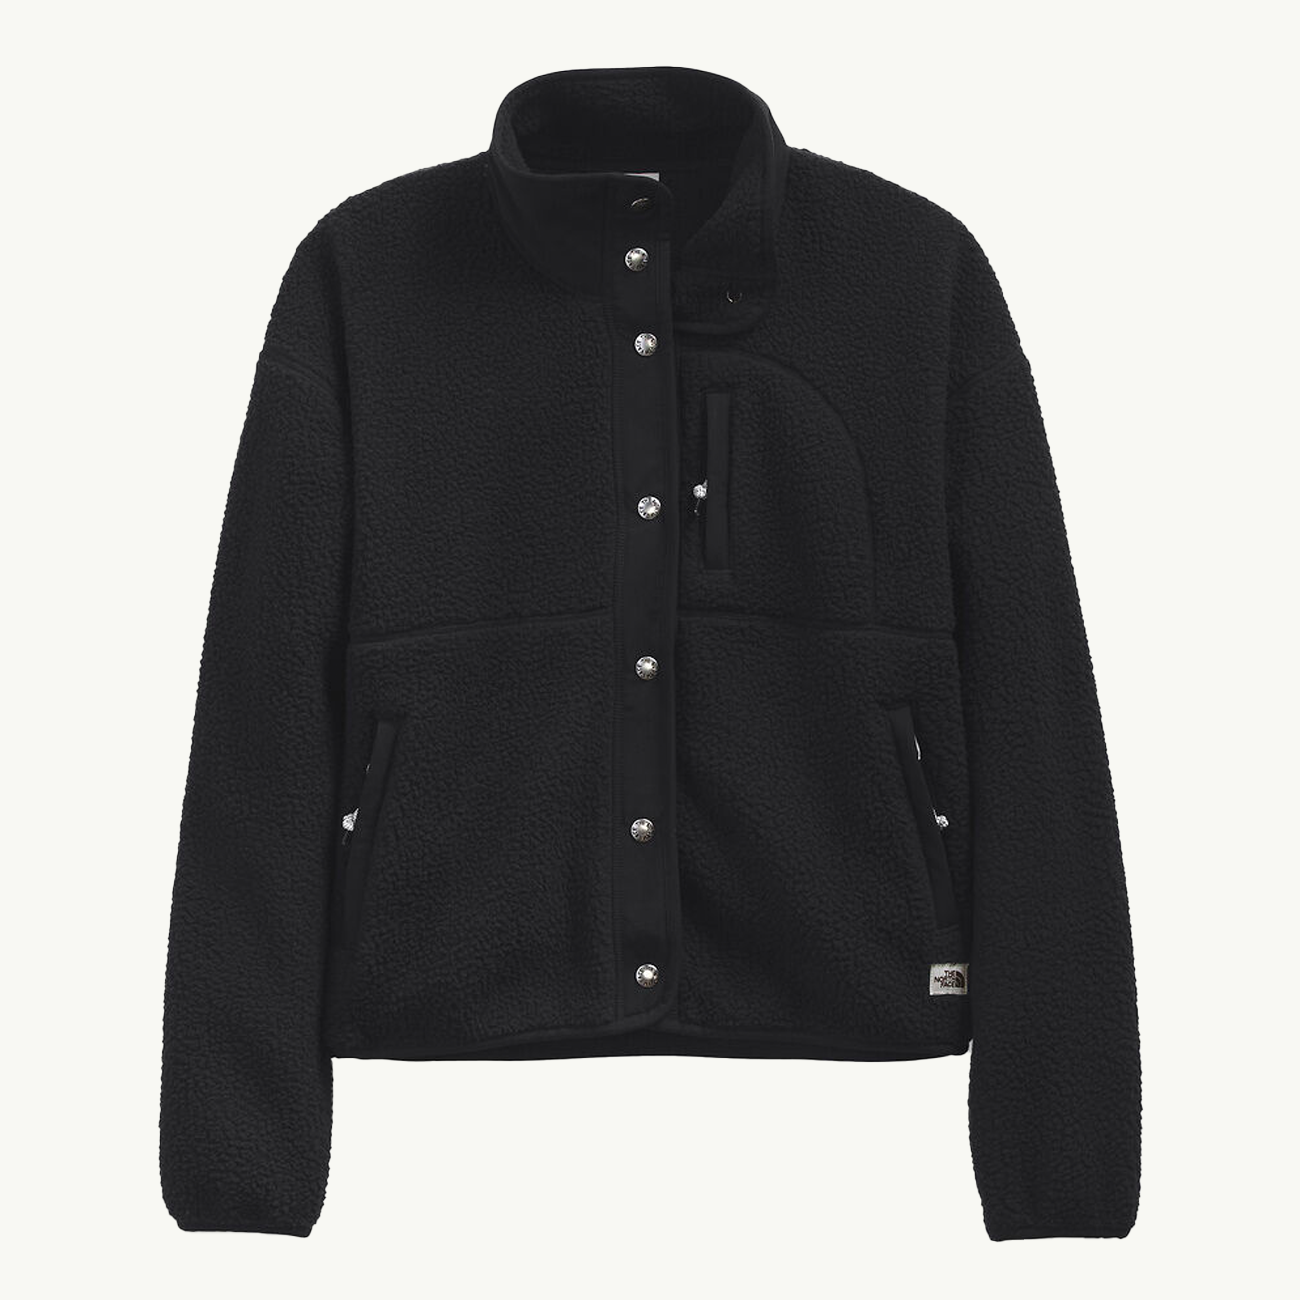 Women's Cragmont Fleece Jacket - TNF Black